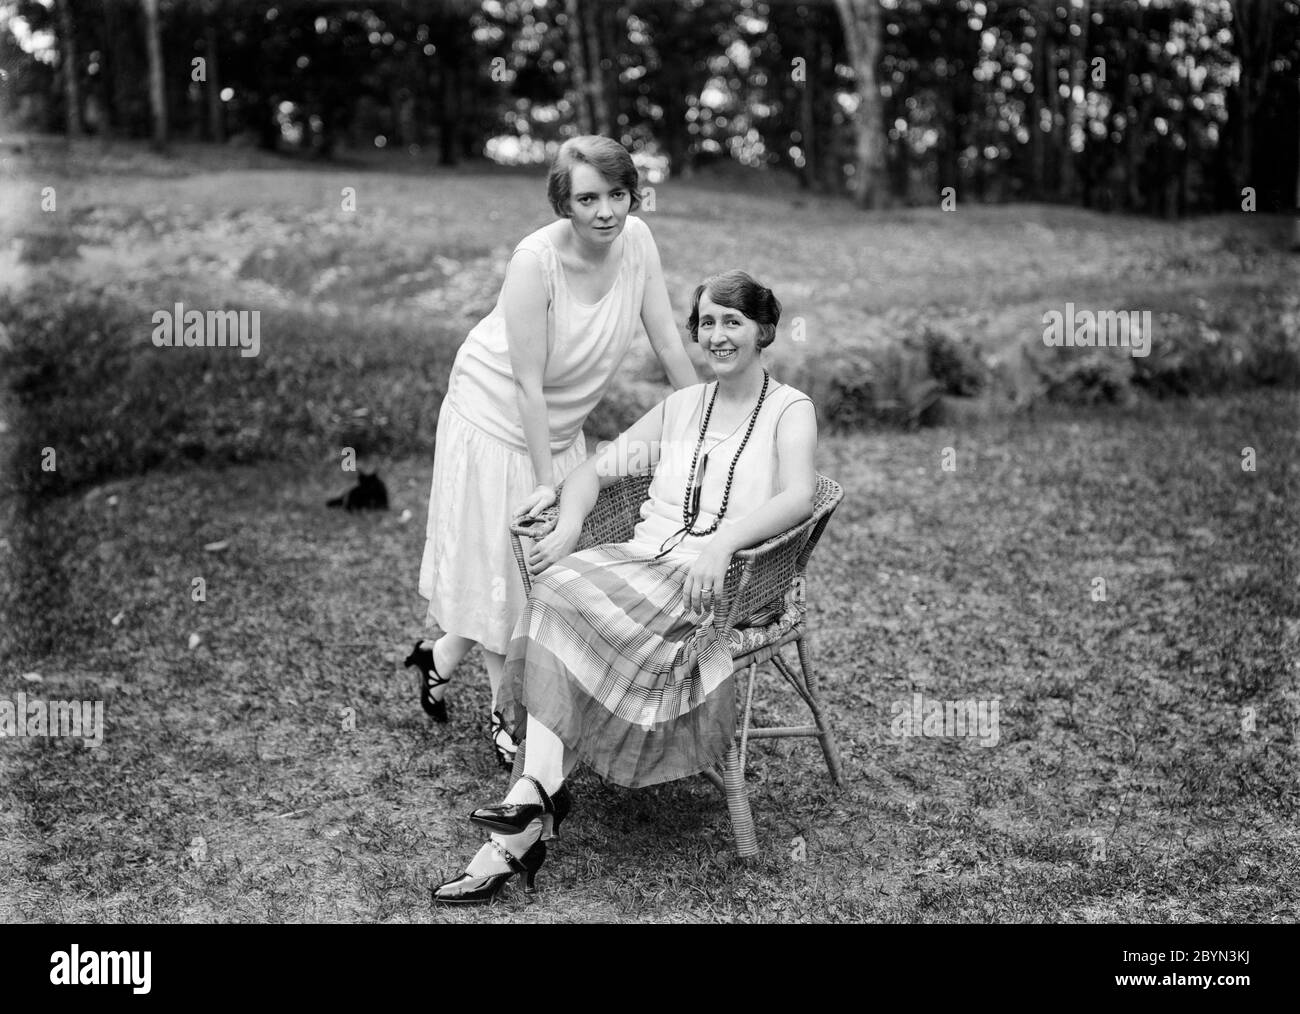 Photographie anglaise vintage des années 1920 en noir et blanc montrant une femme mûre, assise dans un jardin sur une chaise en osier, avec sa fille, une jeune femme, debout à côté d'elle, penchée sur la chaise. Les deux sont souriants et montrent la robe et la mode de l'époque. Banque D'Images